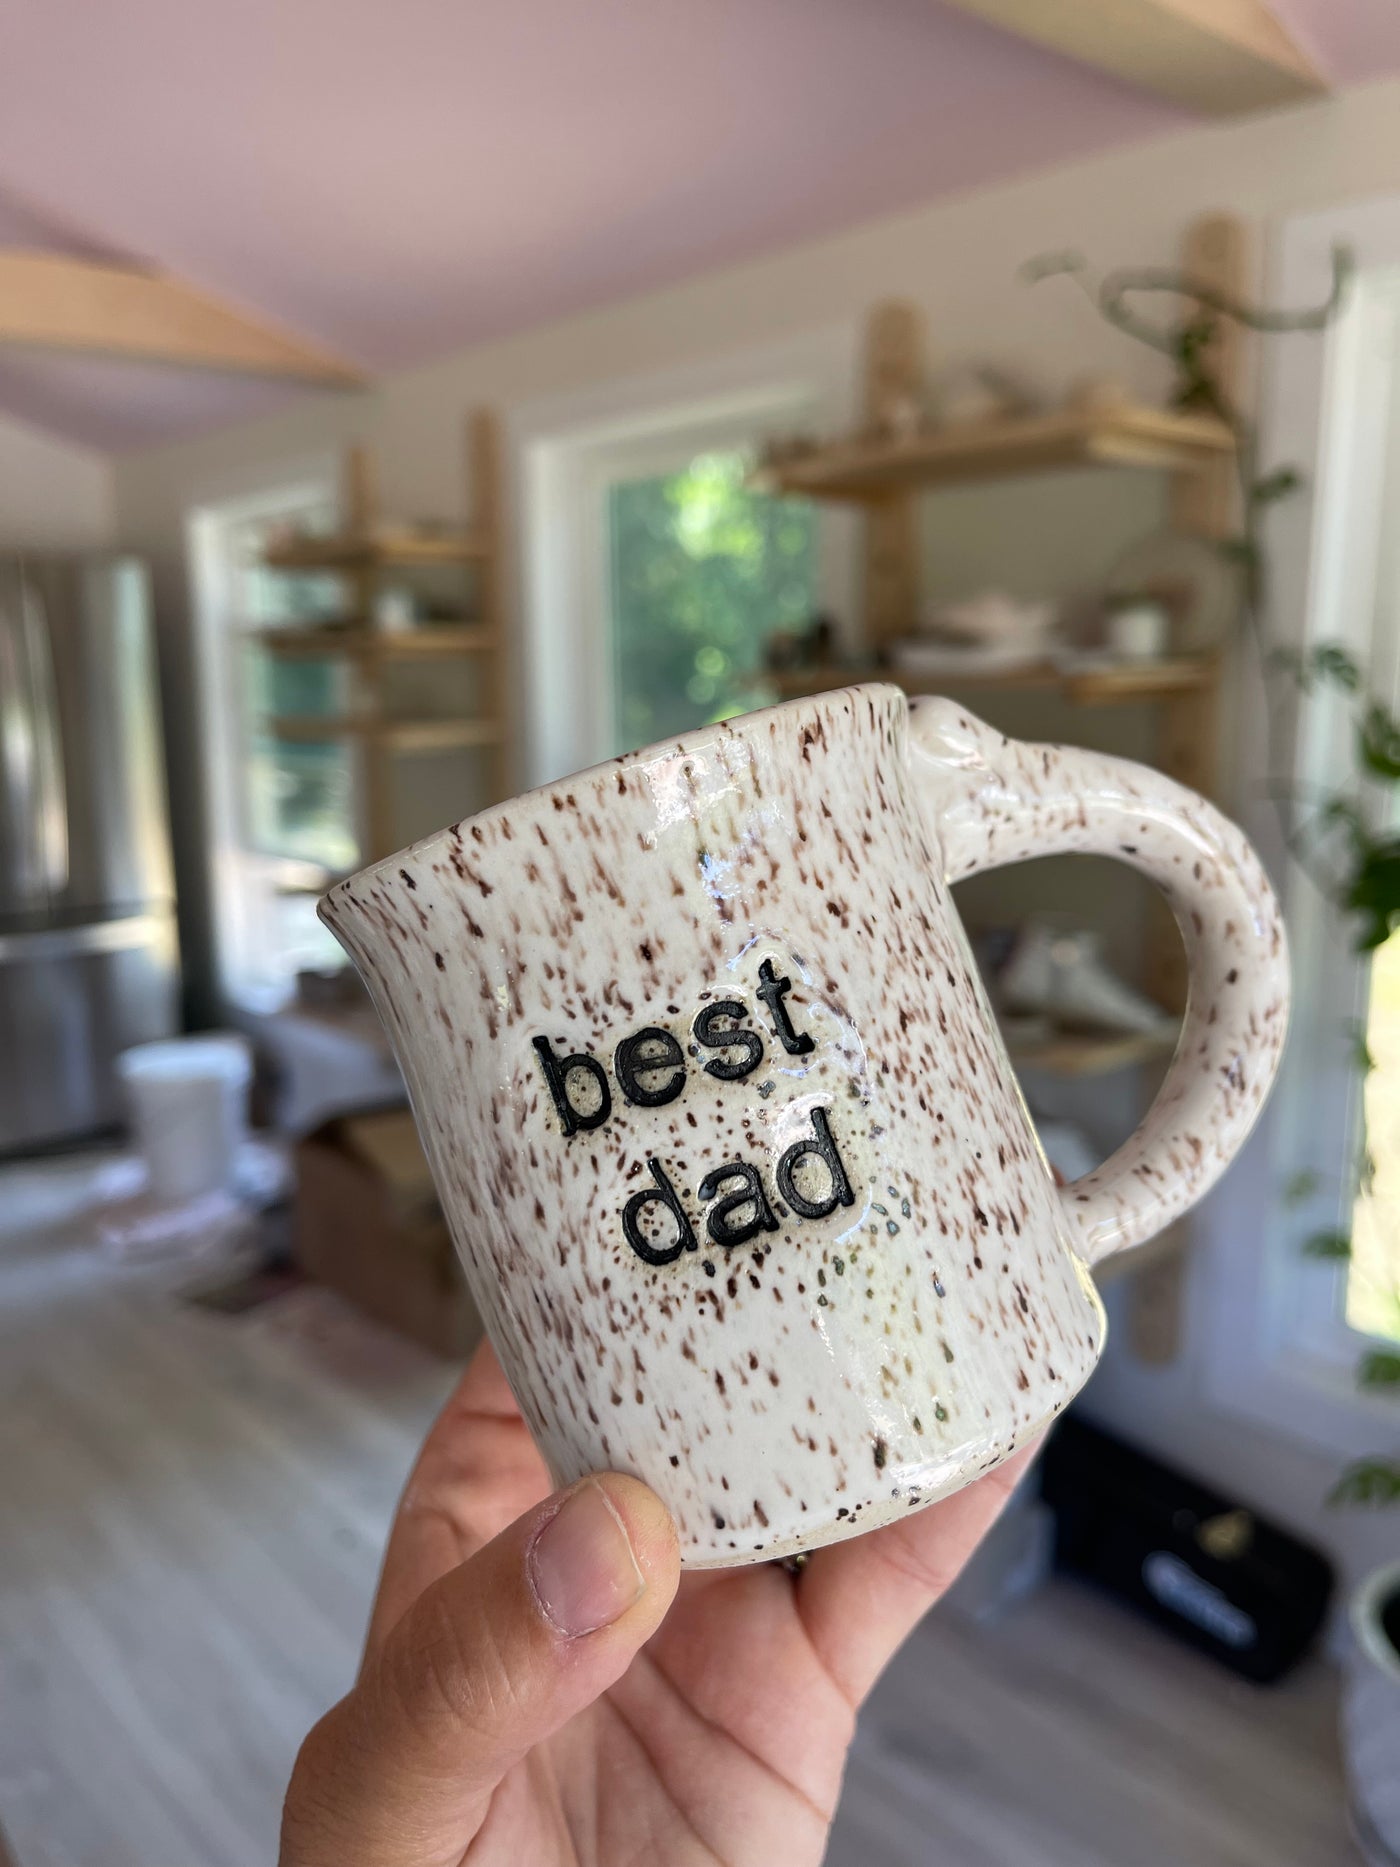 Best “_______” Mug